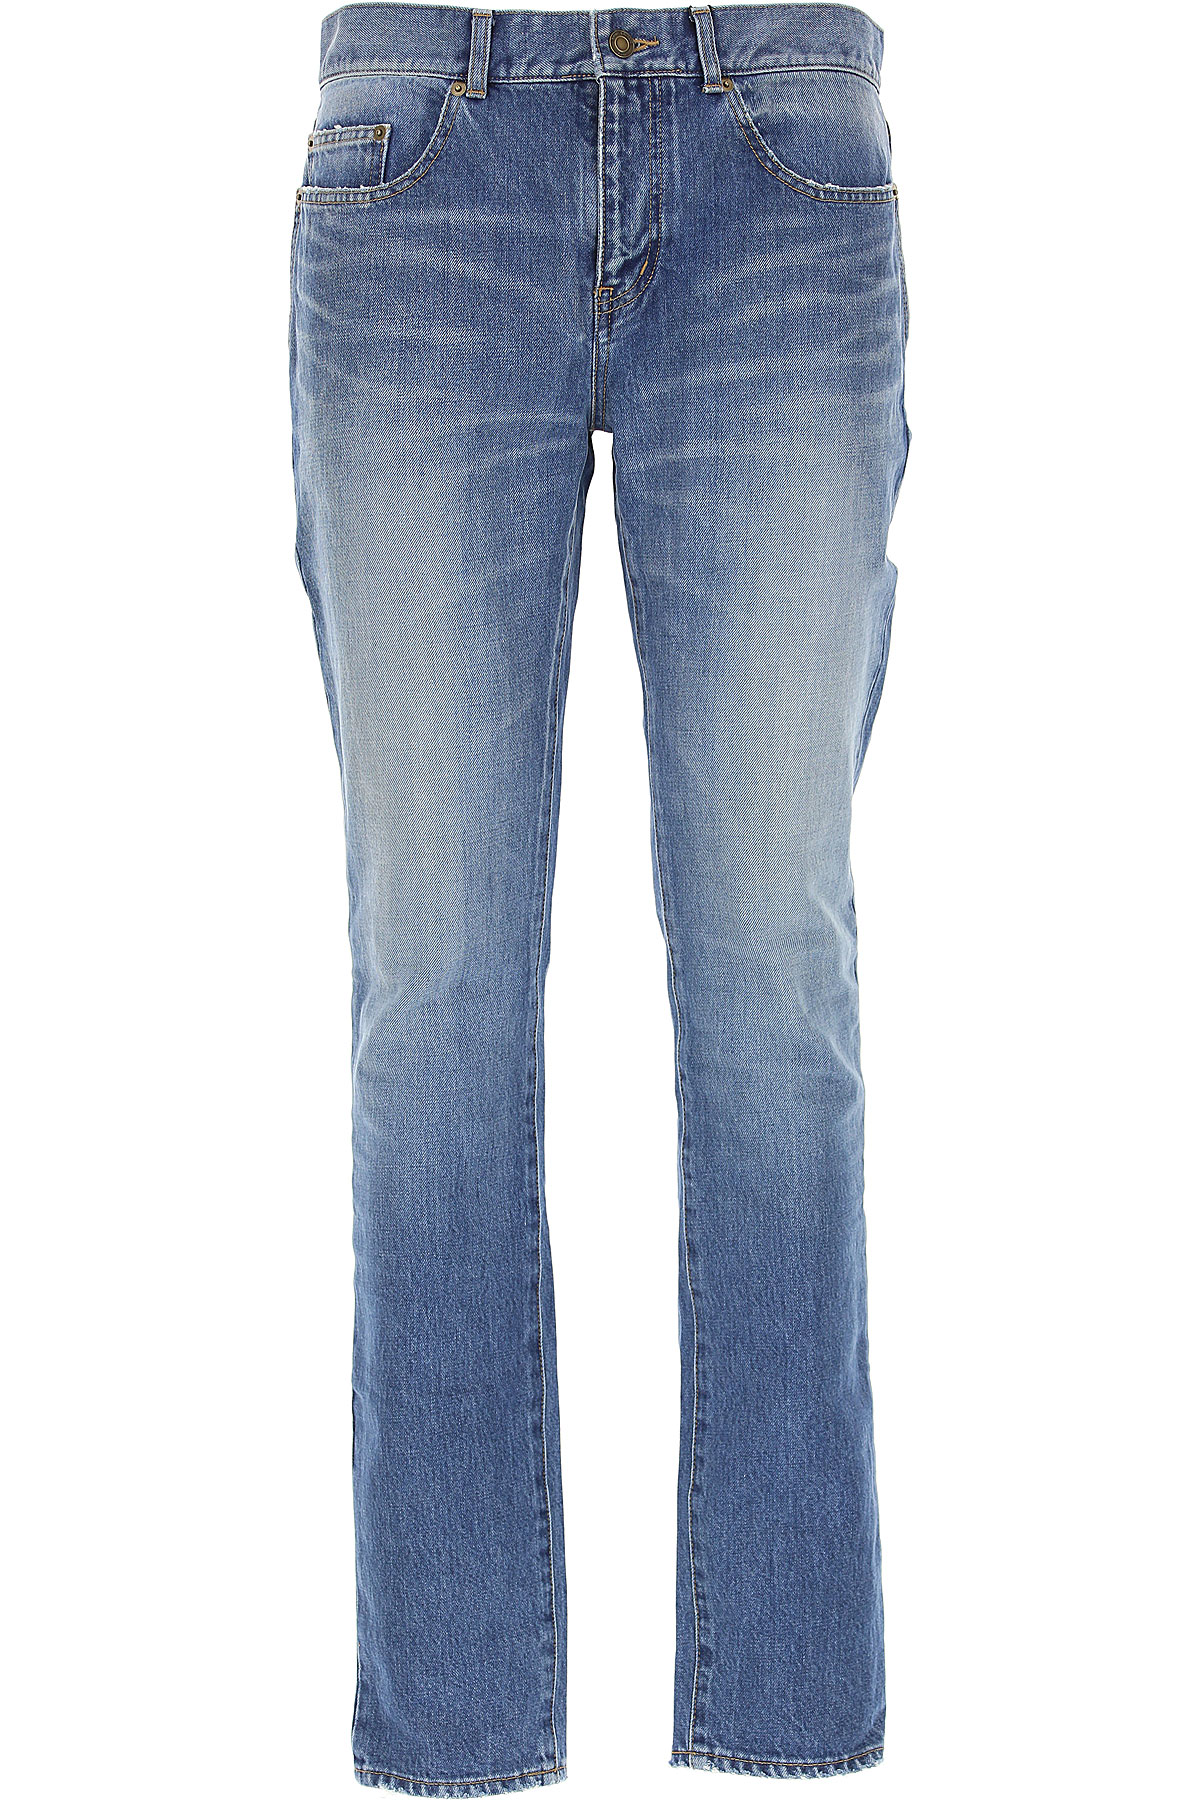 Yves Saint Laurent Jeans, Bluejeans, Denim Jeans für Herren Günstig im Outlet Sale, Denim Mittelblau, Baumwolle, 2017, 46 47